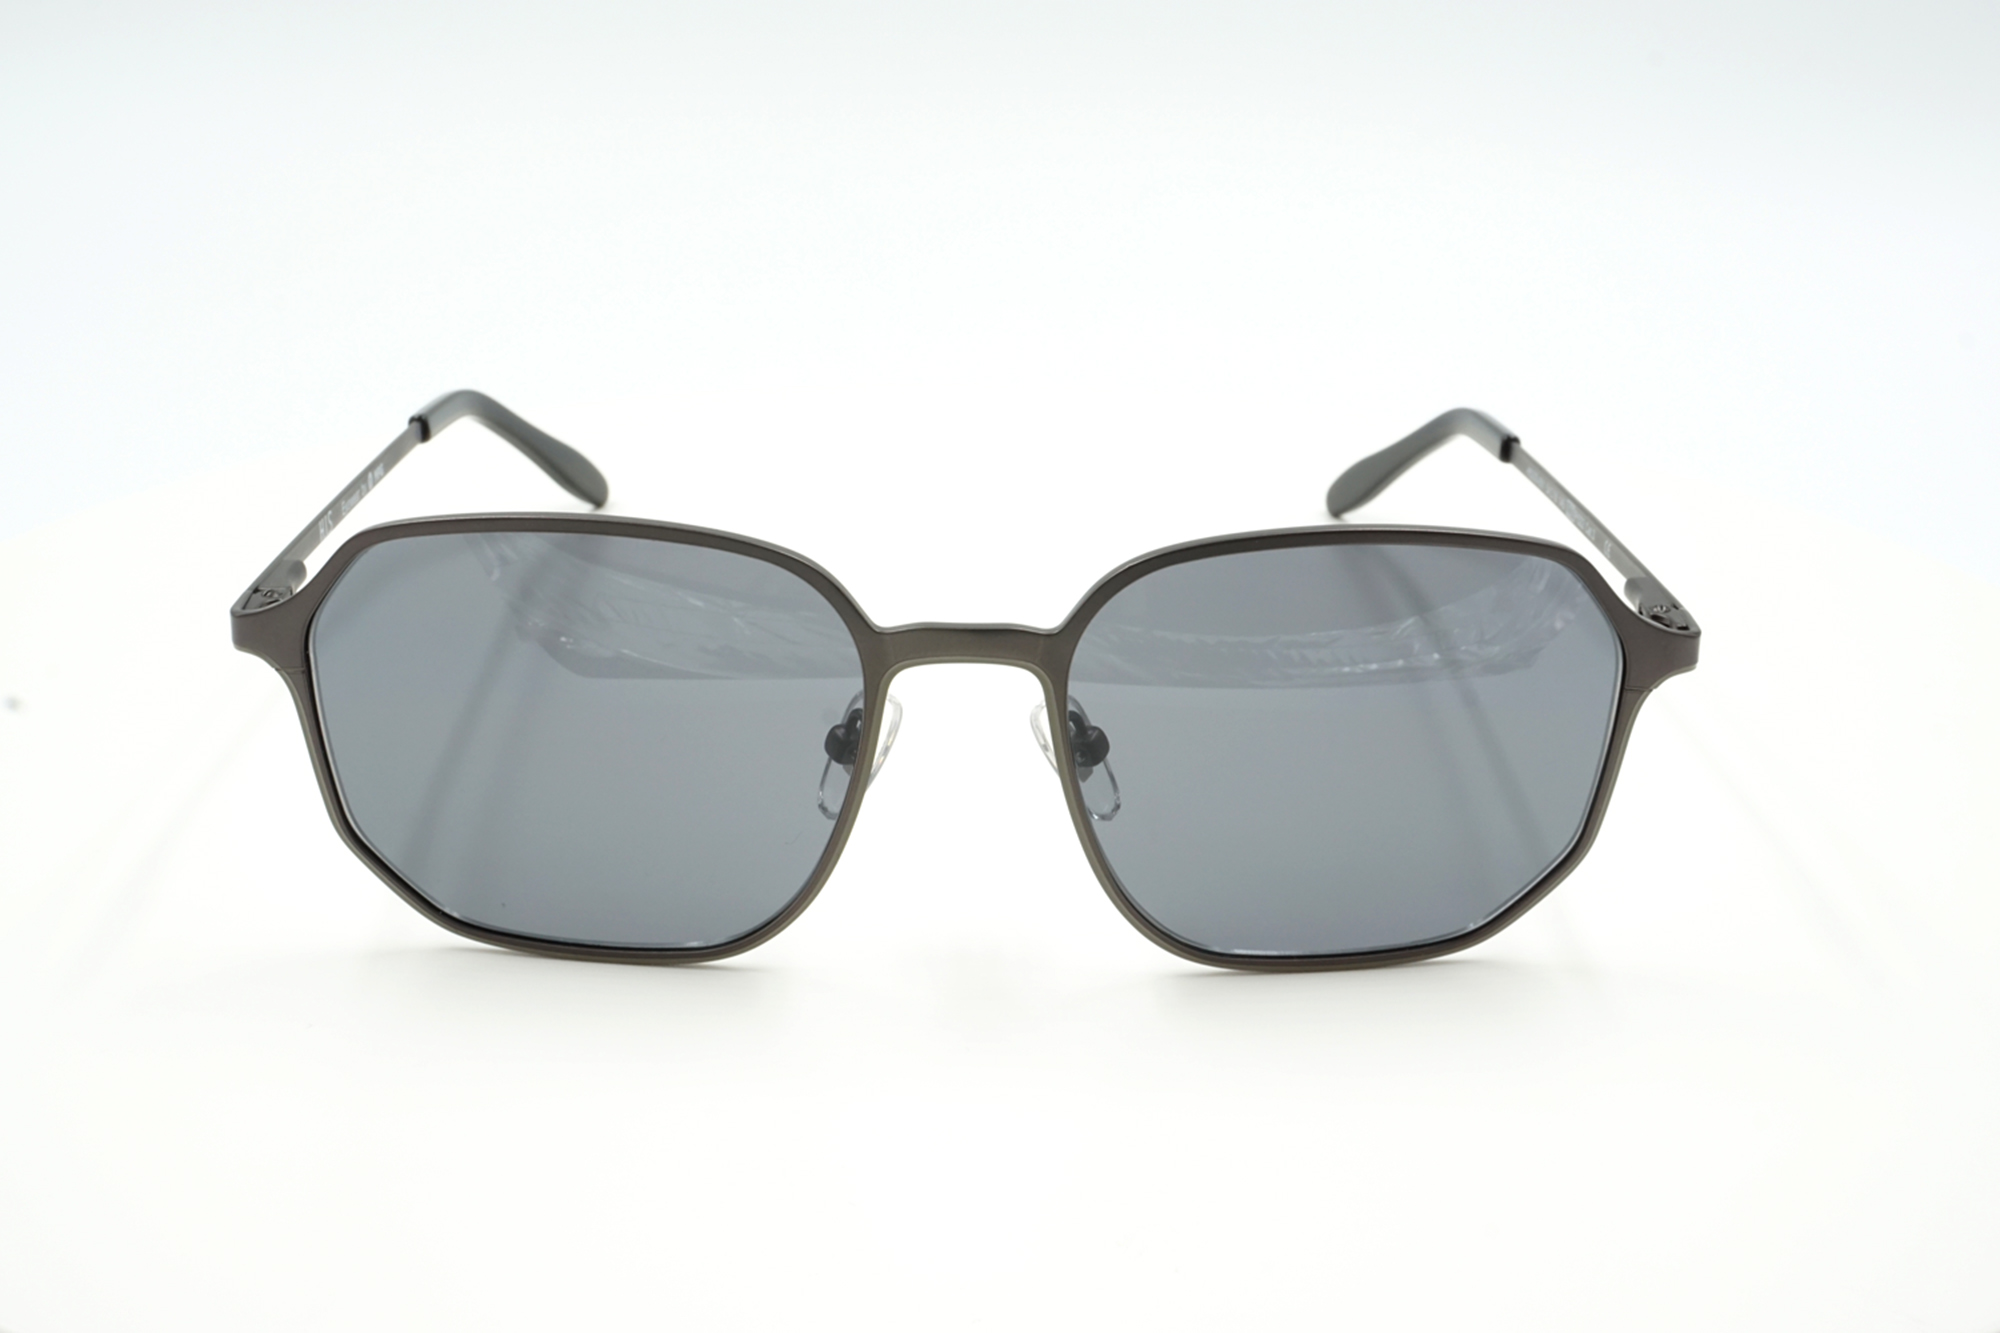 Sonnenbrille Complete mit optischen Sonnengläsern